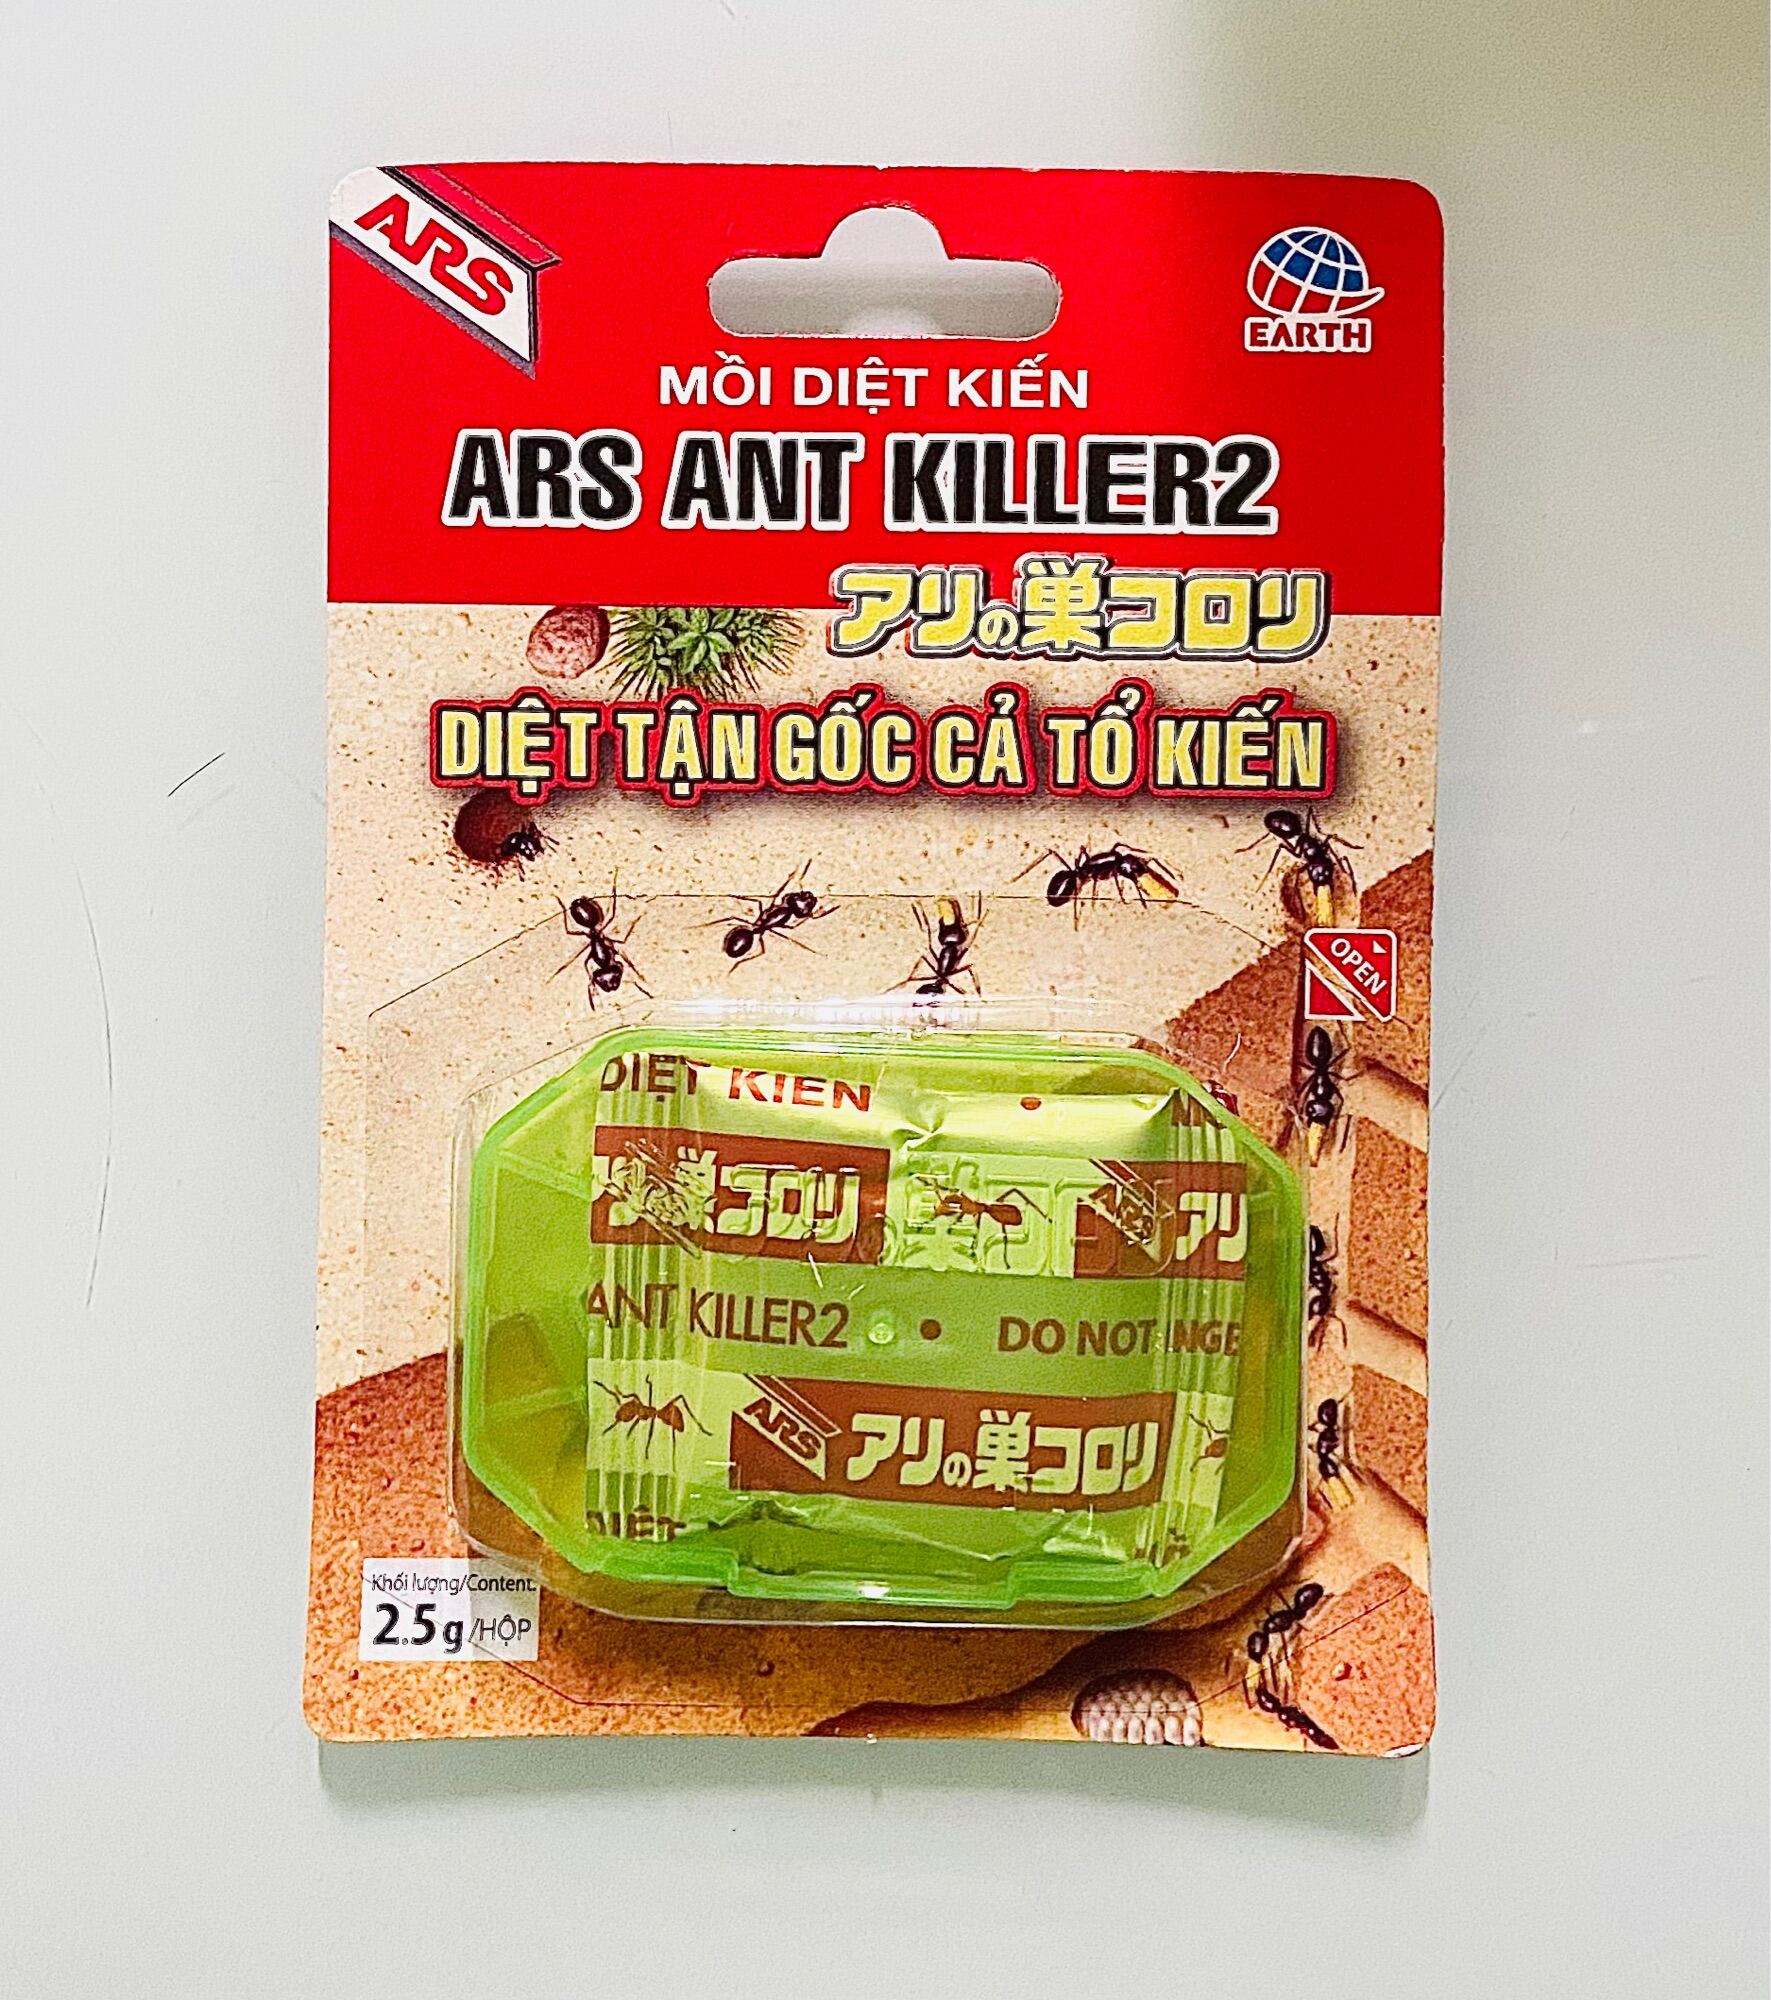 Mồi Diệt Kiến ARS Ant Killer 2 Diệt kiến tận gốc bẫy dẫn dụ kiến hàng nhập